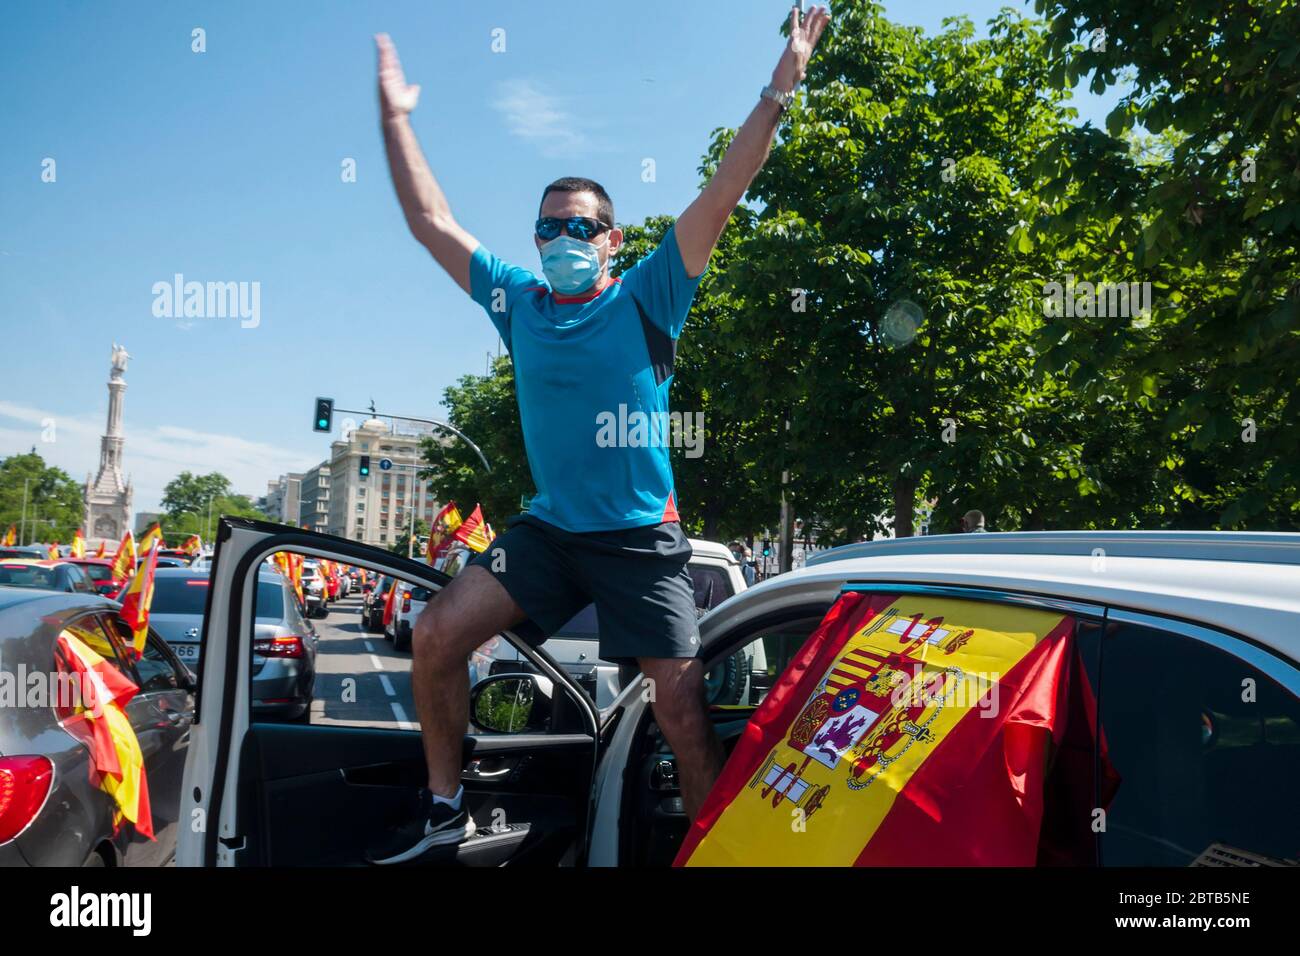 Madrid, Spanien. Mai 2020. Rechtspopulistische VOX-Autoparade, die die Regierung auffordert, wegen angeblicher Misswirtschaft während der Corona-Krise abzutreten. Madrid, 23. Mai 2020 Quelle: dpa/Alamy Live News Stockfoto